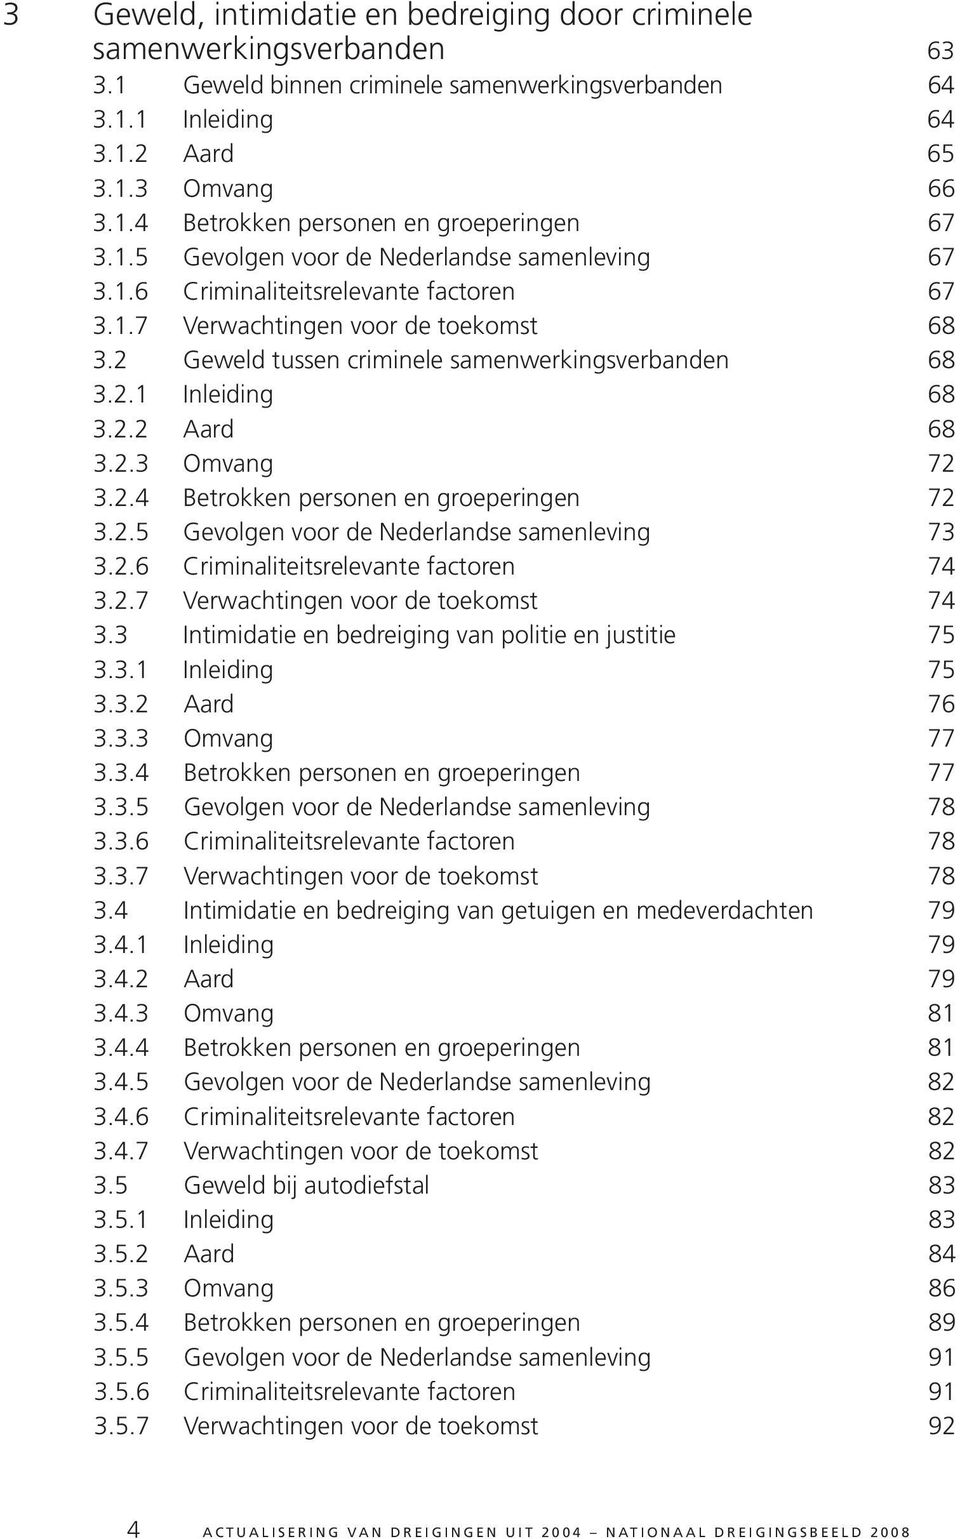 2.2 Aard 68 3.2.3 Omvang 72 3.2.4 Betrokken personen en groeperingen 72 3.2.5 Gevolgen voor de Nederlandse samenleving 73 3.2.6 Criminaliteitsrelevante factoren 74 3.2.7 Verwachtingen voor de toekomst 74 3.